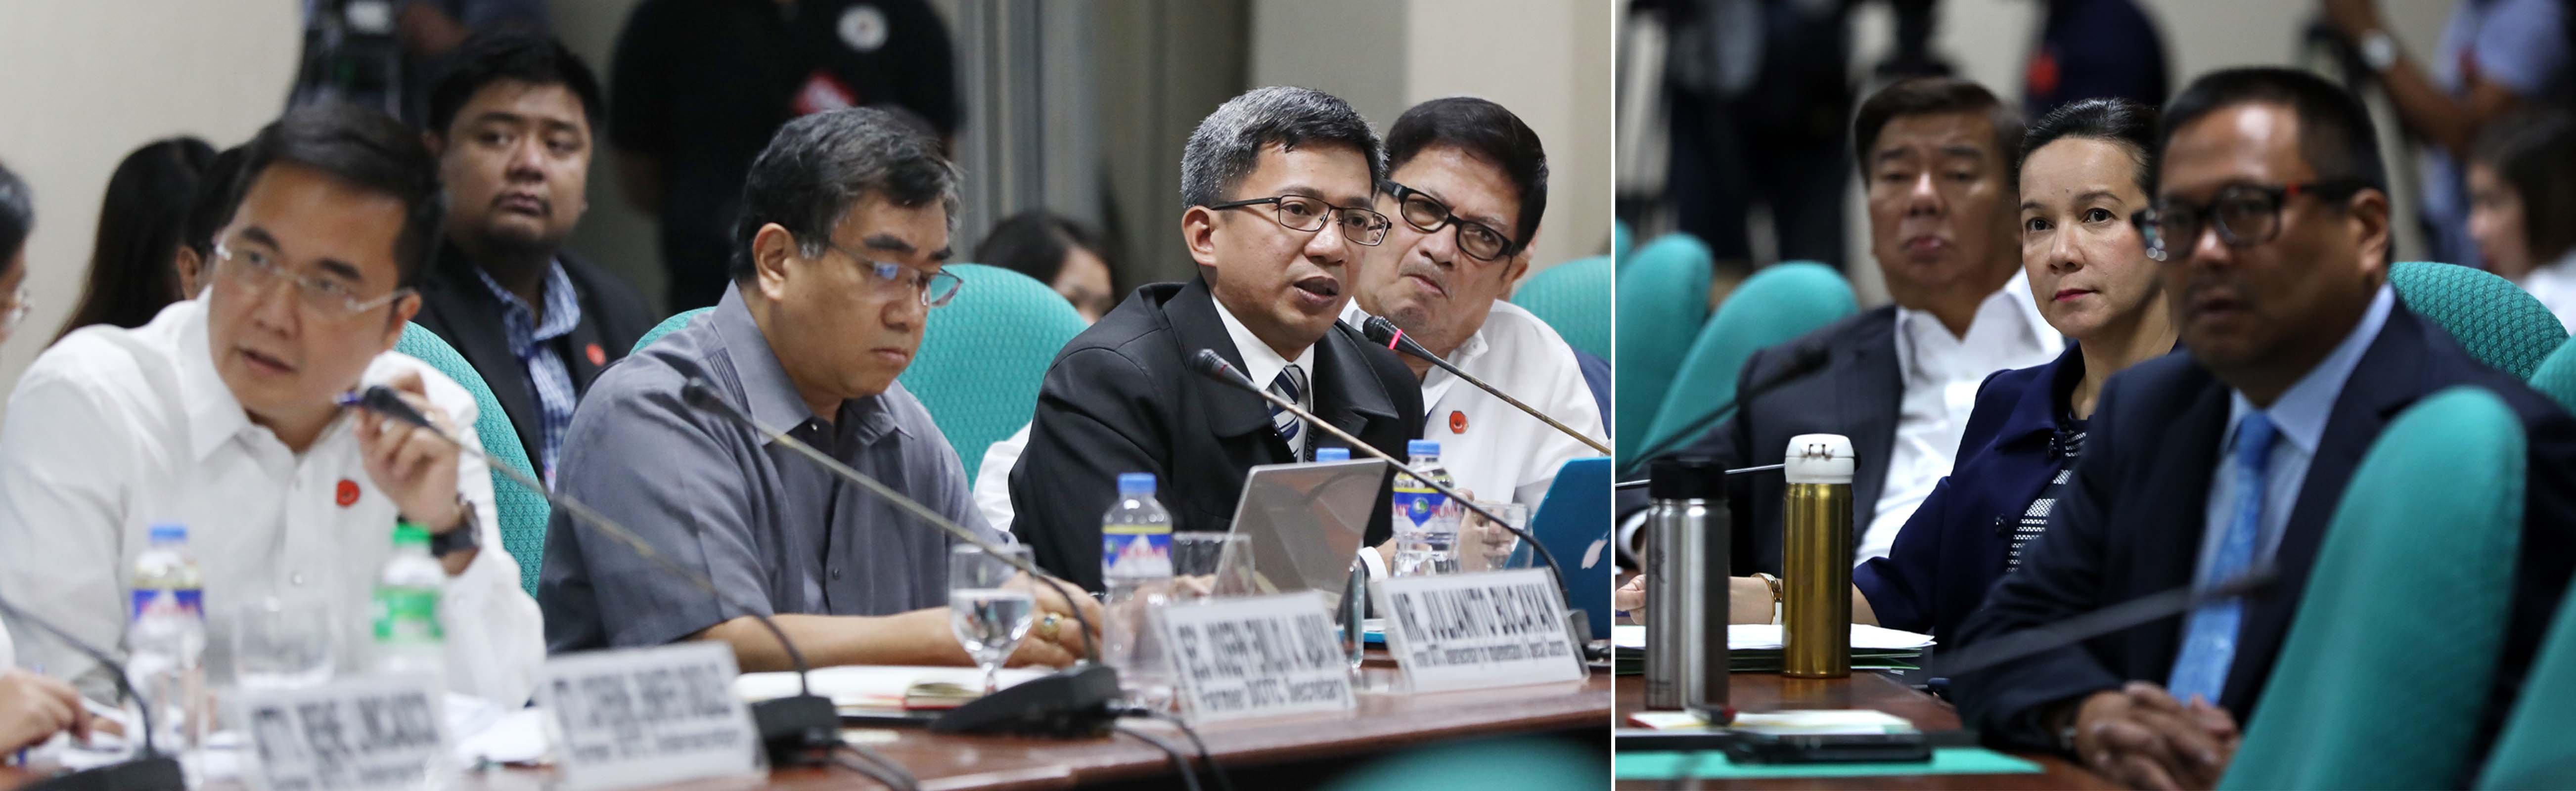 Senate inquiry on MRT management inefficiency